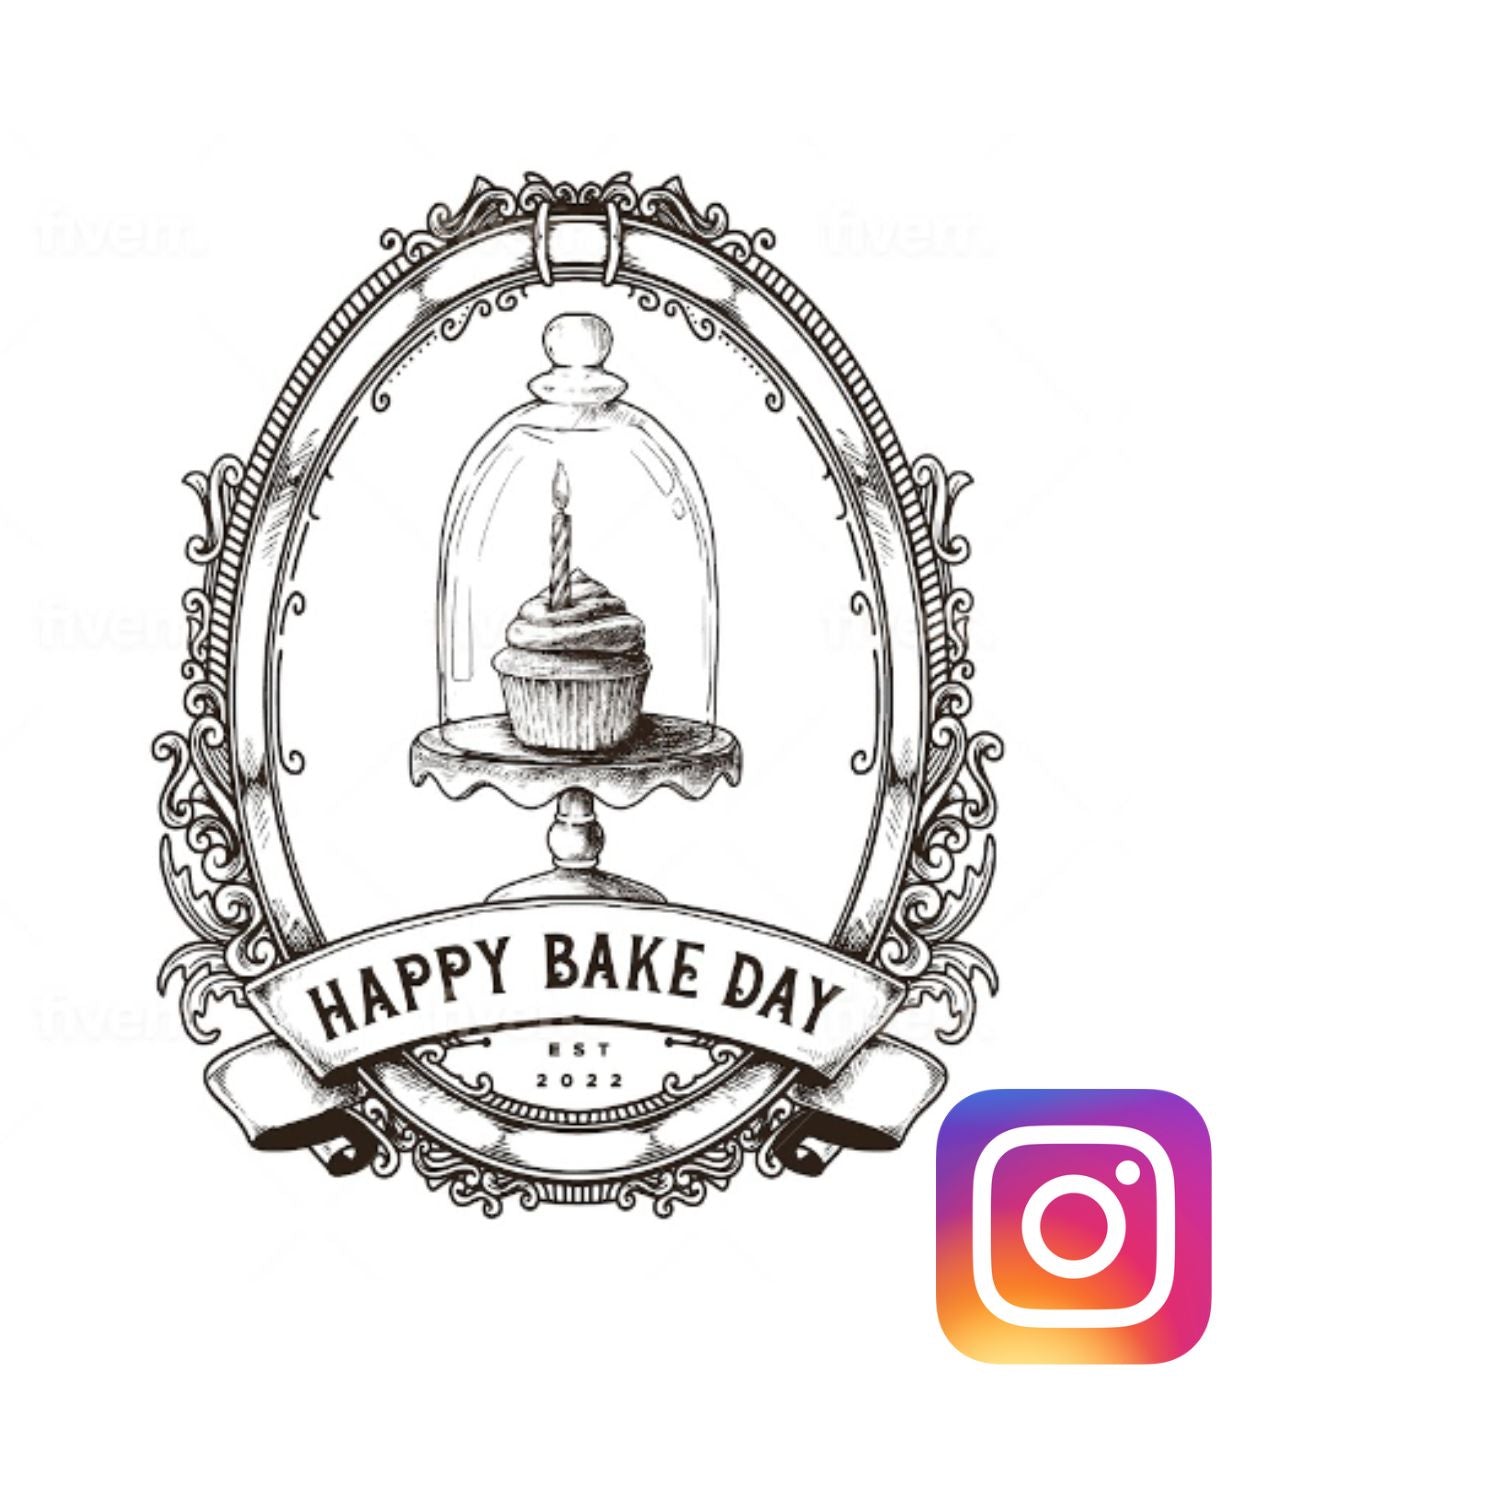 Happy Bake Day on Instagram